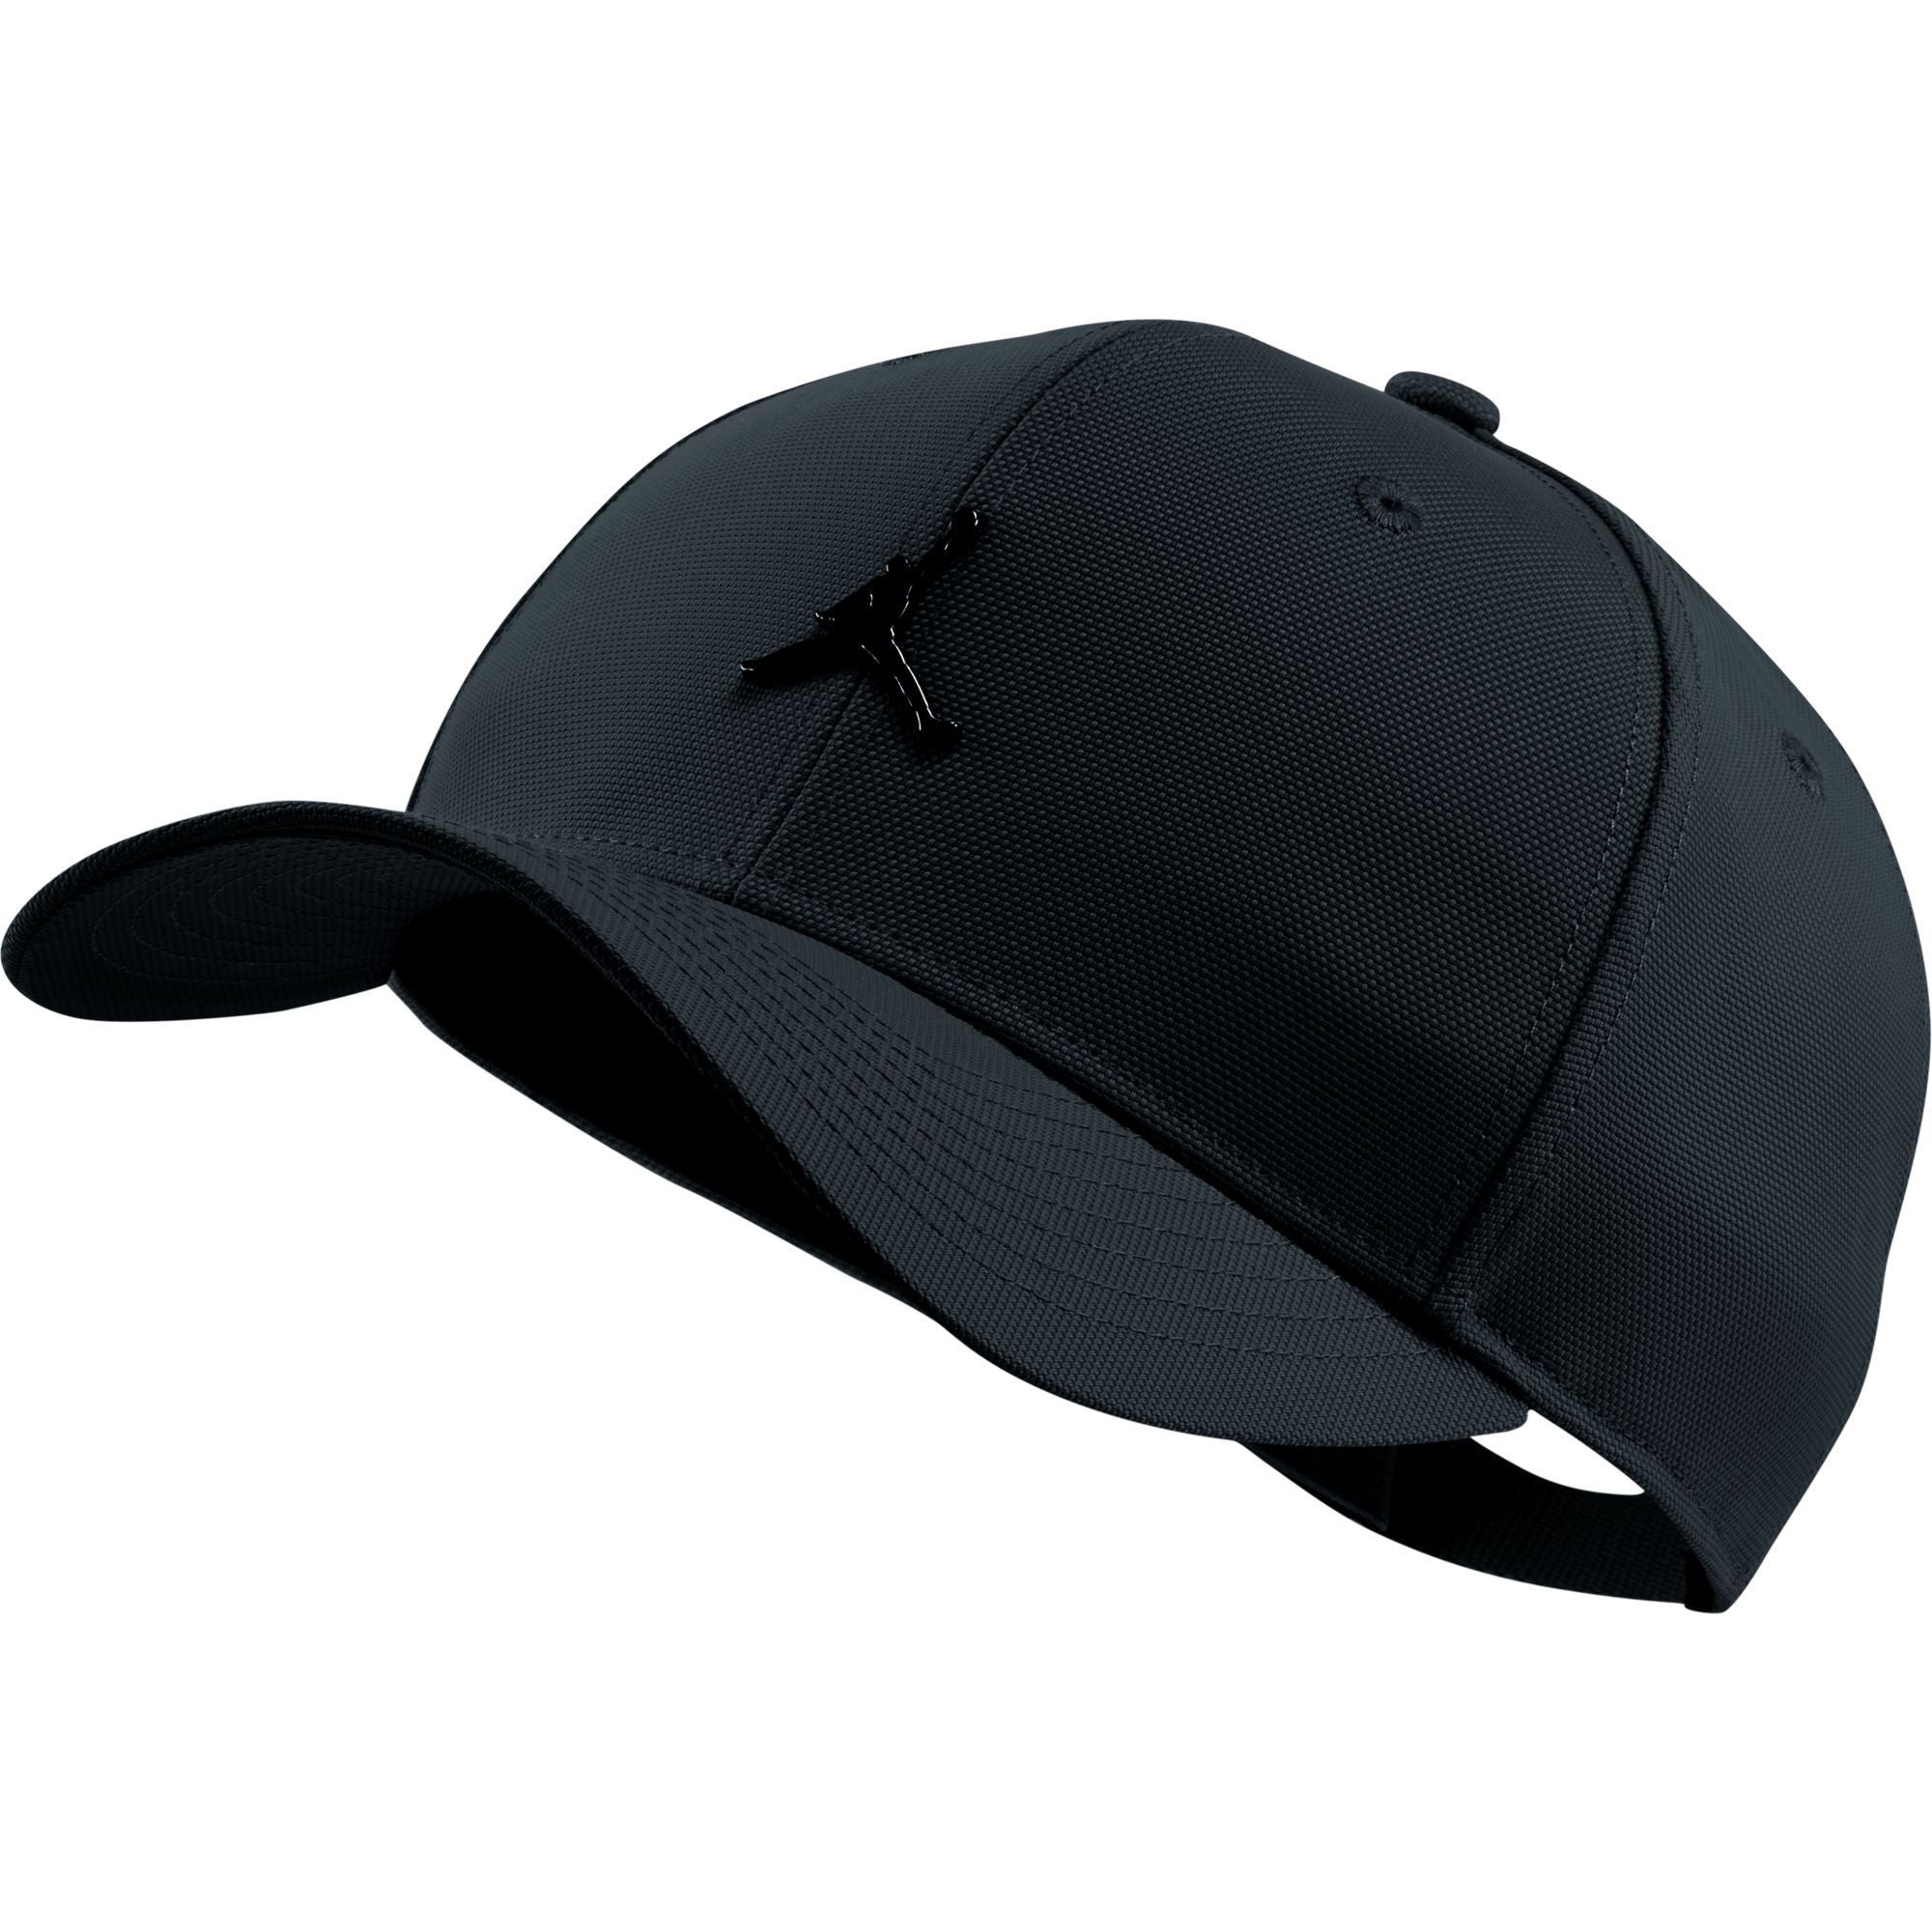 قبعة كلاسيكية ٩٩ بتصميم قابل للتعديل